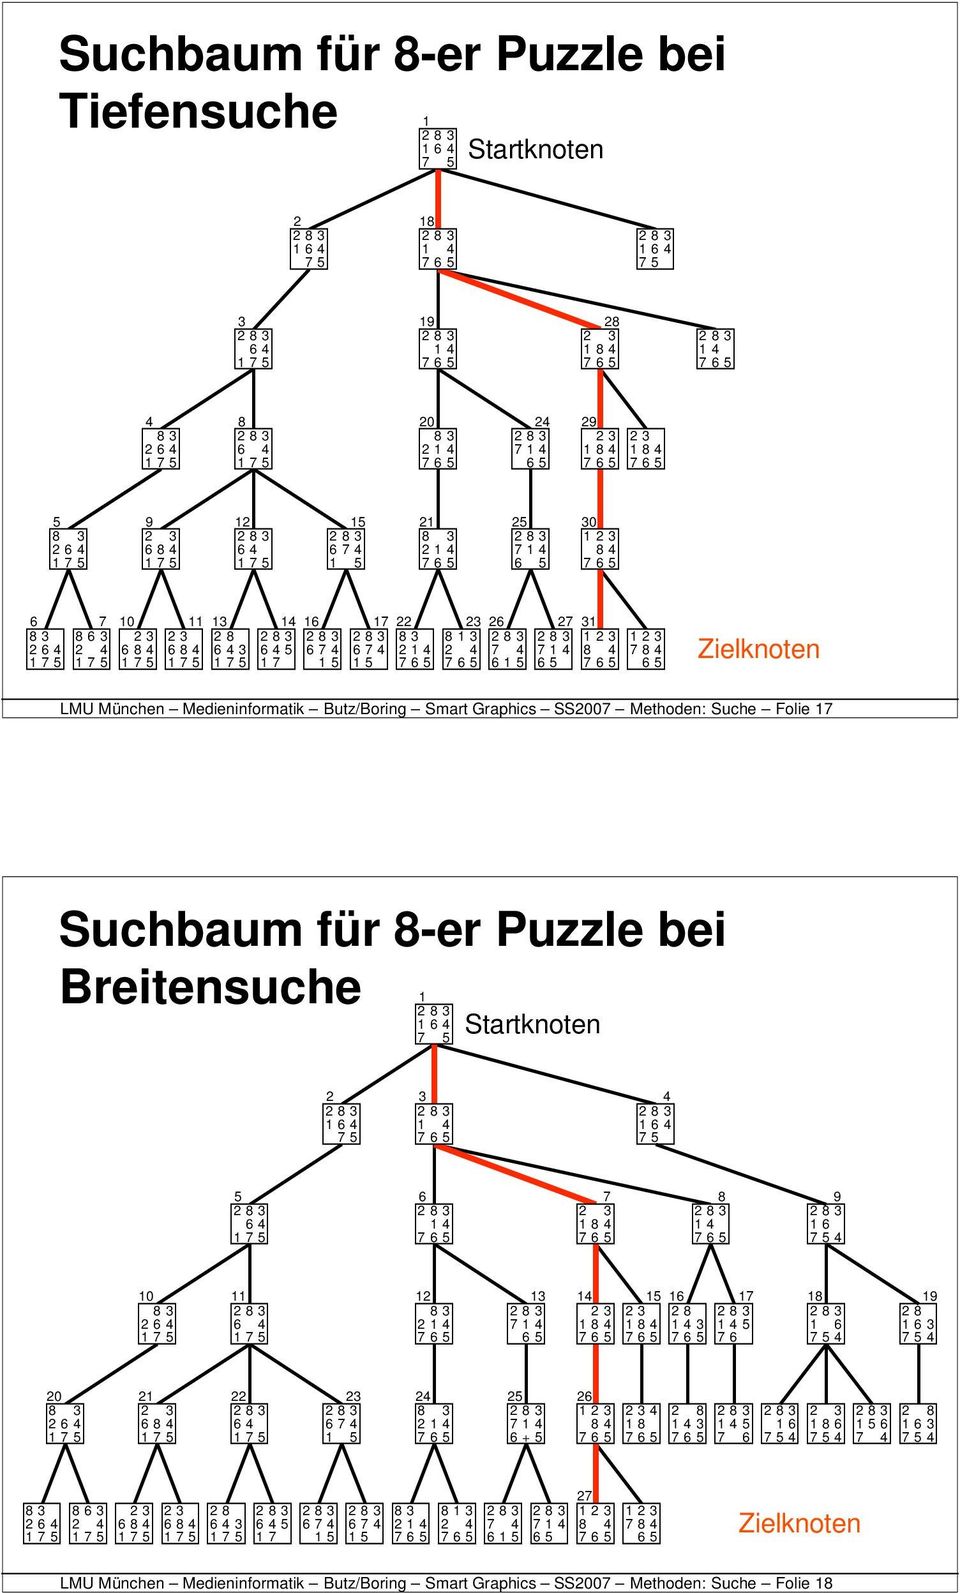 Zielknoten LMU München Medieninformatik Butz/Boring Smart Graphics SS2007 Methoden: Suche Folie 17 Suchbaum für 8-er Puzzle bei Breitensuche 1 1 6 4 7 5 Startknoten 2 1 6 4 7 5 3 1 4 4 1 6 4 7 5 5 6